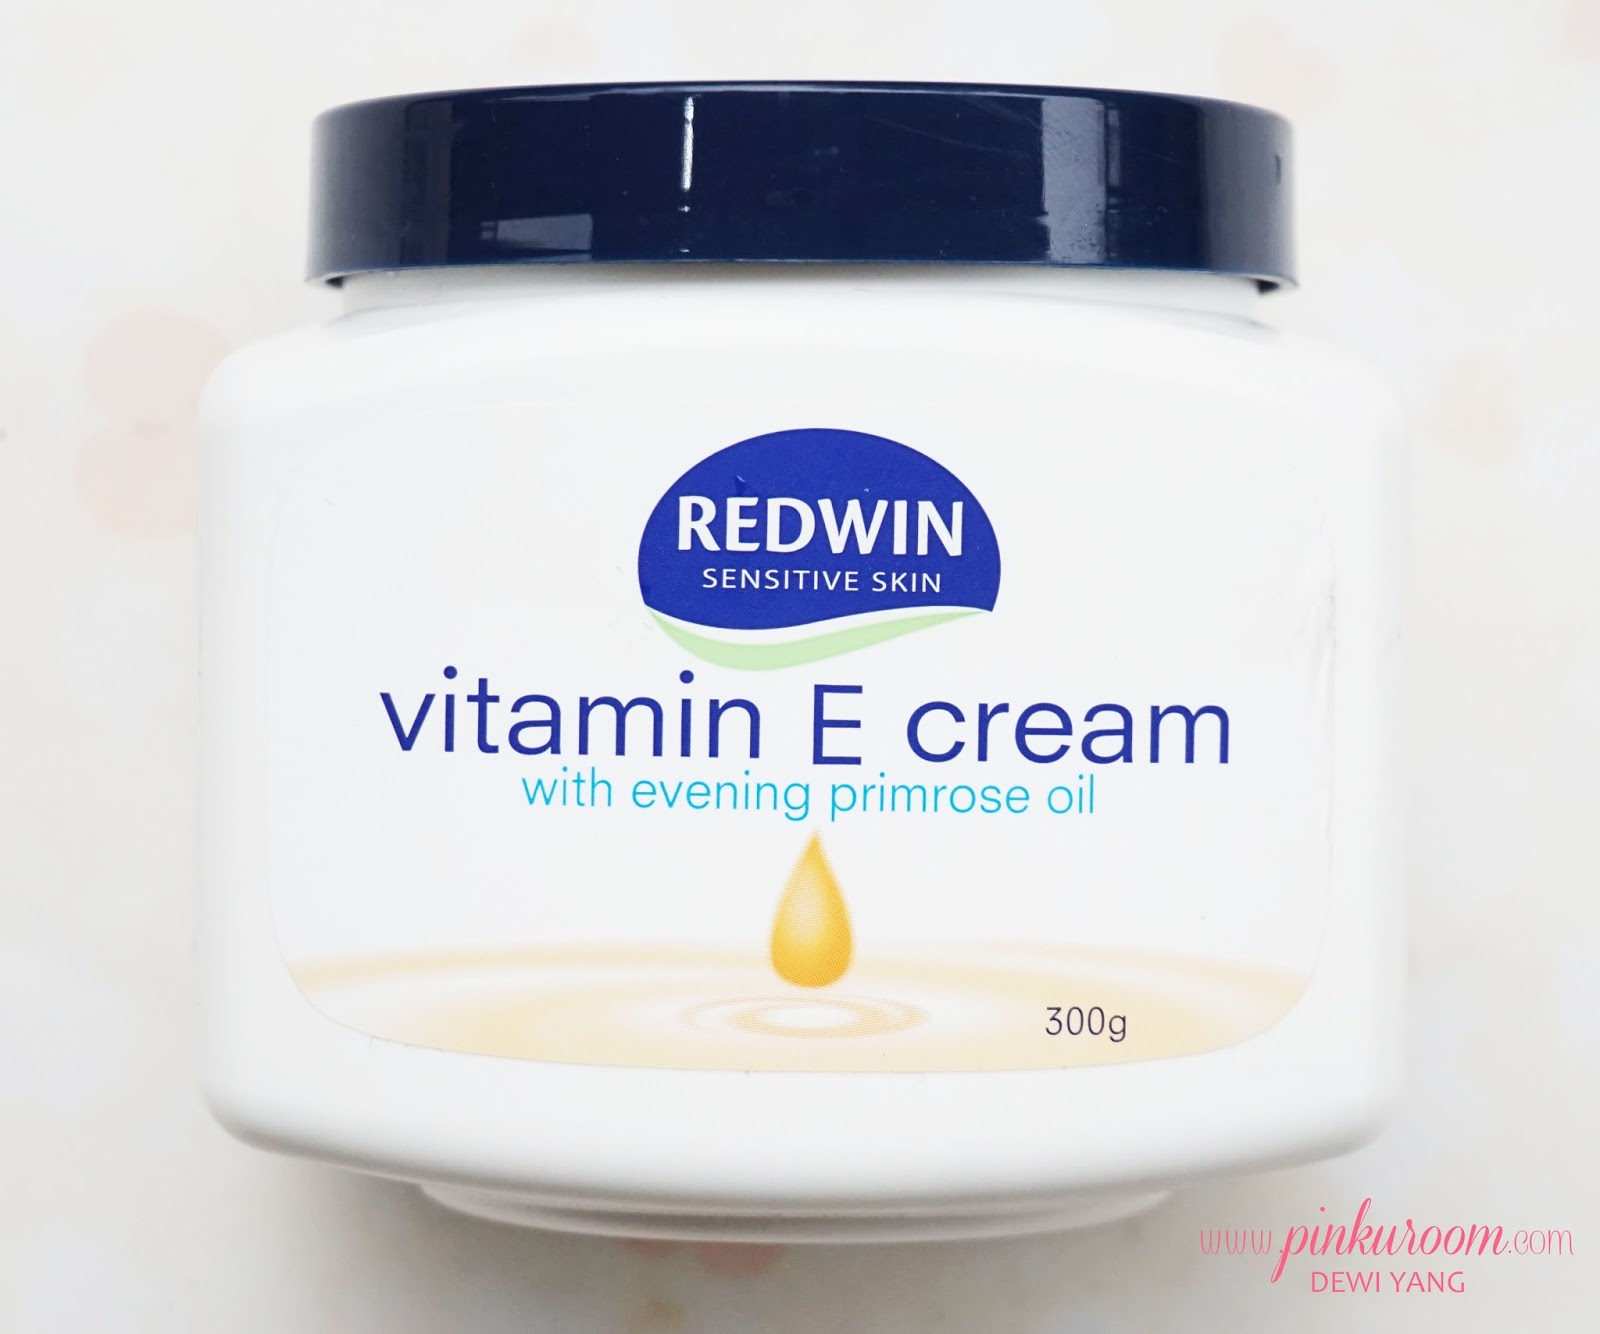 redwin vitamin e cream with evening primrose oil reviews